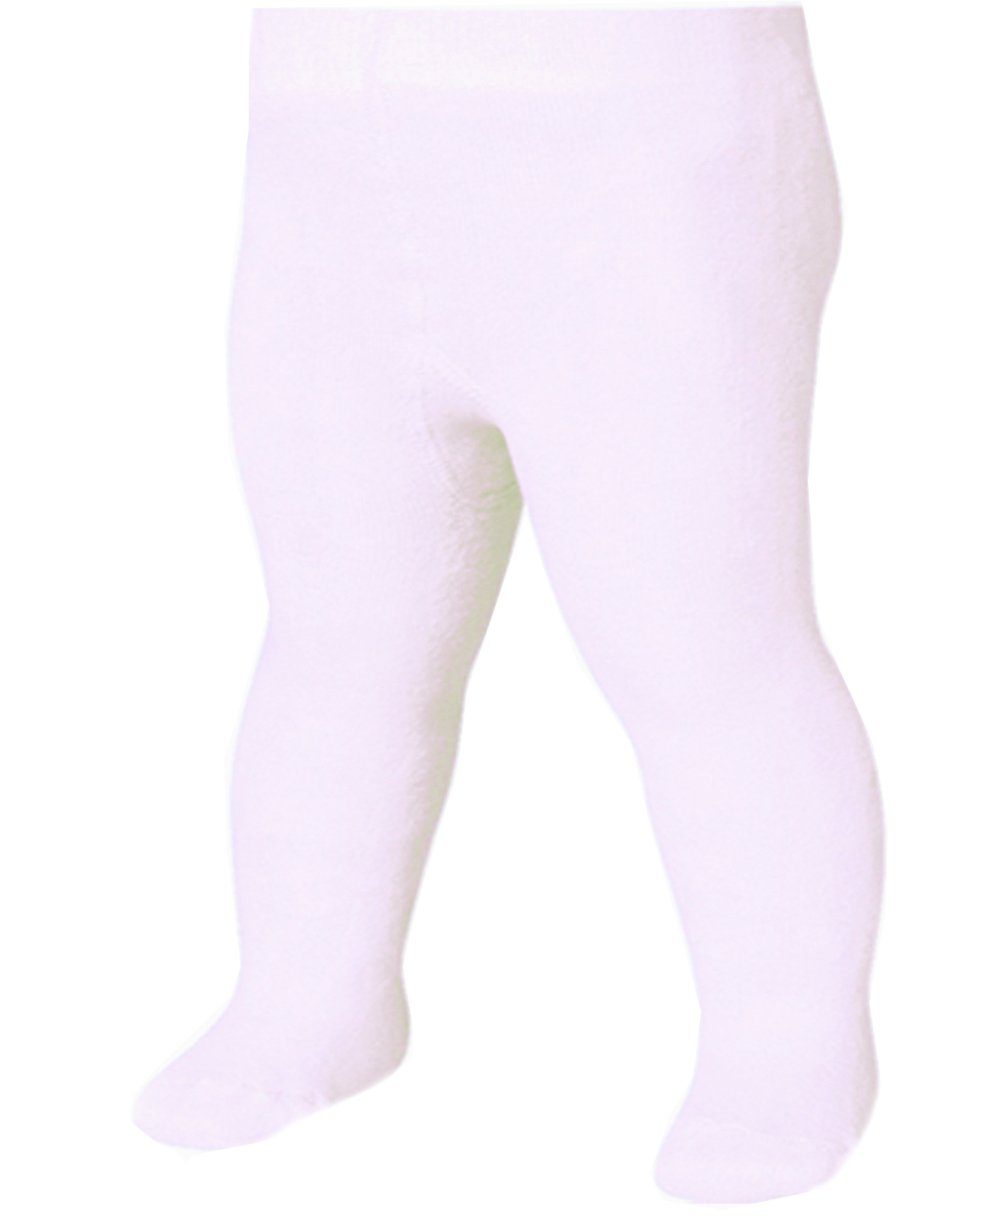 La Bortini Thermostrumpfhose Warme Baby Strumpfhose in Weiß für Neugeborene  und Kleinkinder 50 56 62 68 74 80 86 92